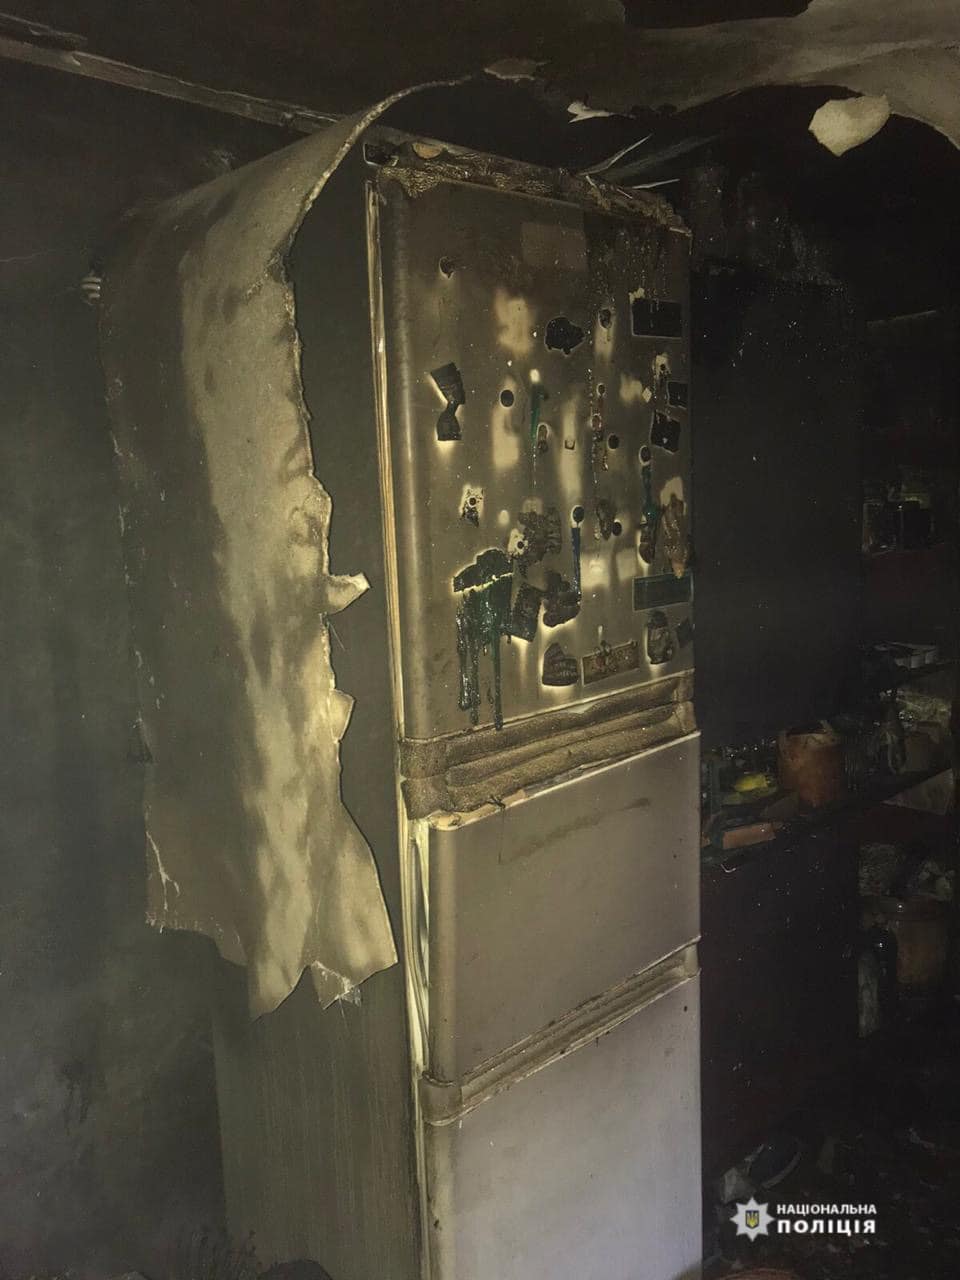 Полиция проверит версию о поджоге дома родителей Васильца, хотя раньше винила в пожаре короткое замыкание. Фото: Полиция